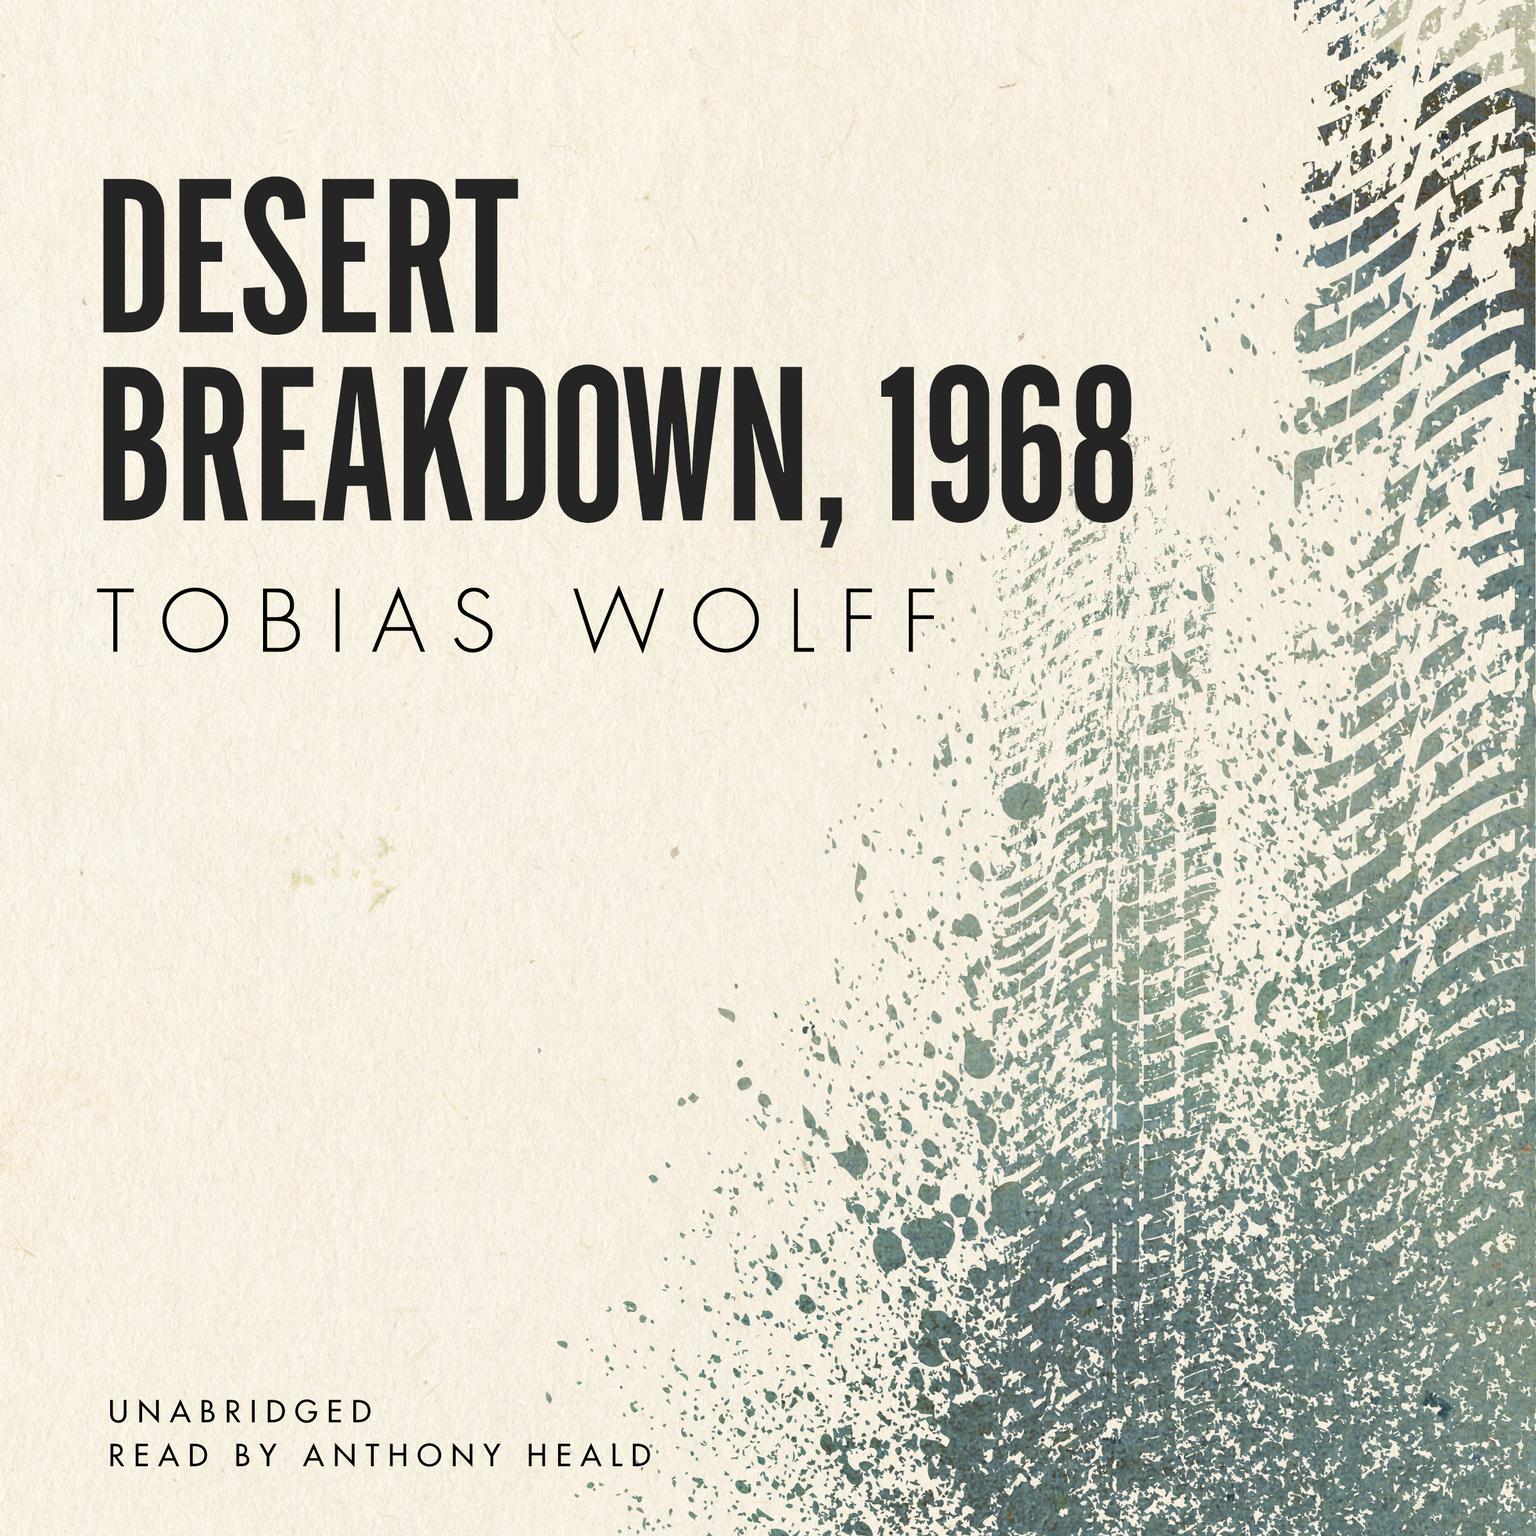 Desert Breakdown, 1968 Audiobook, by Tobias Wolff